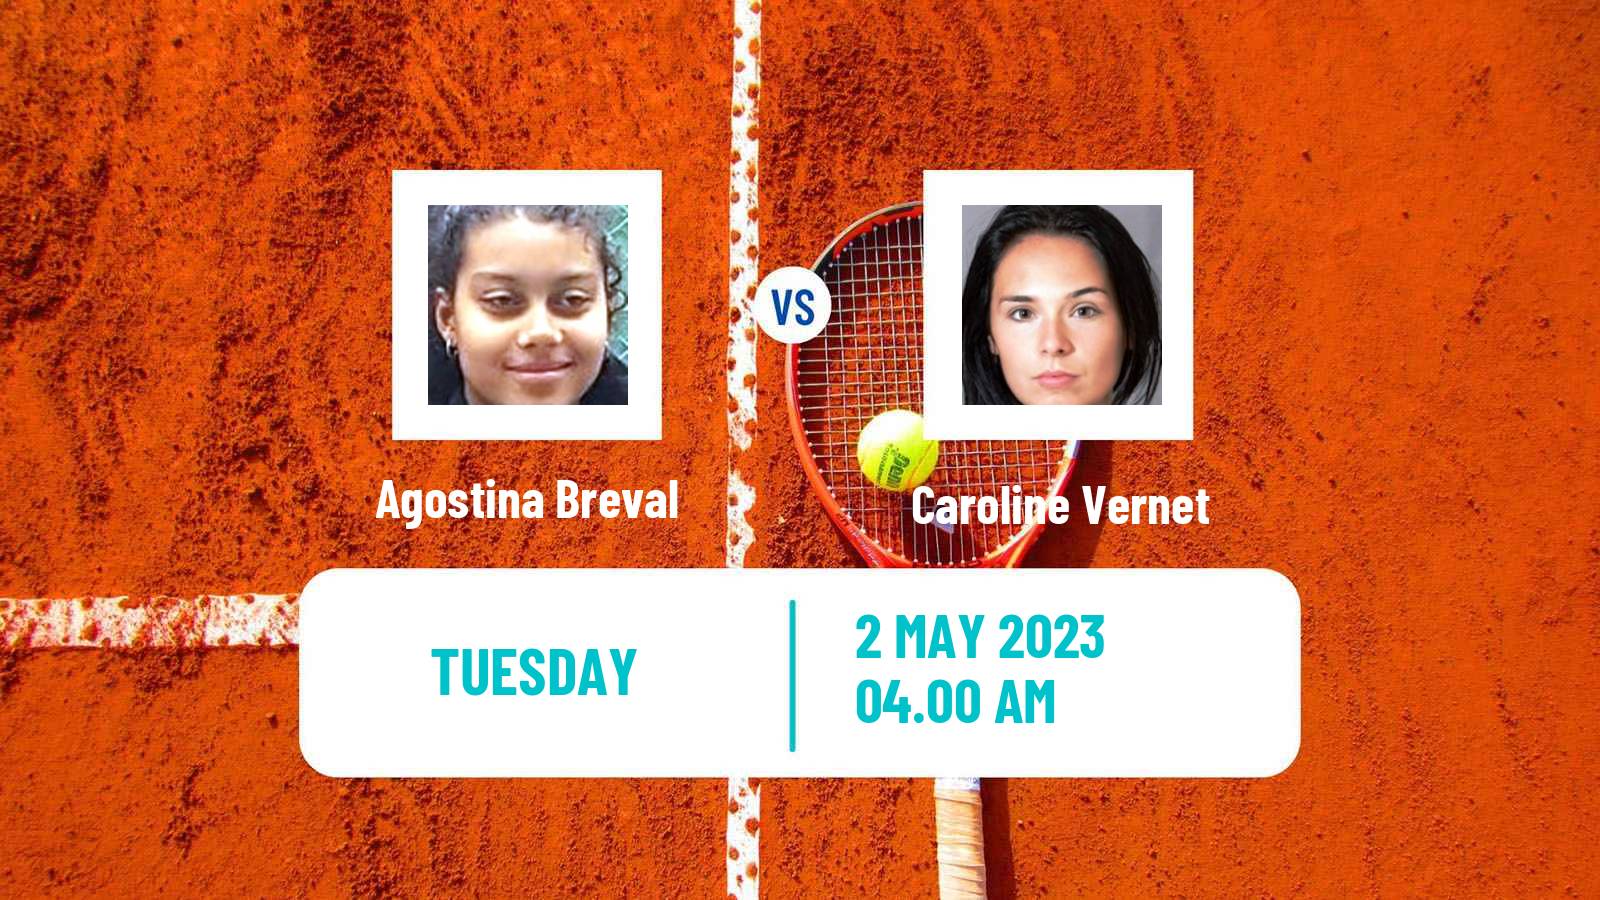 Tennis ITF Tournaments Agostina Breval - Caroline Vernet